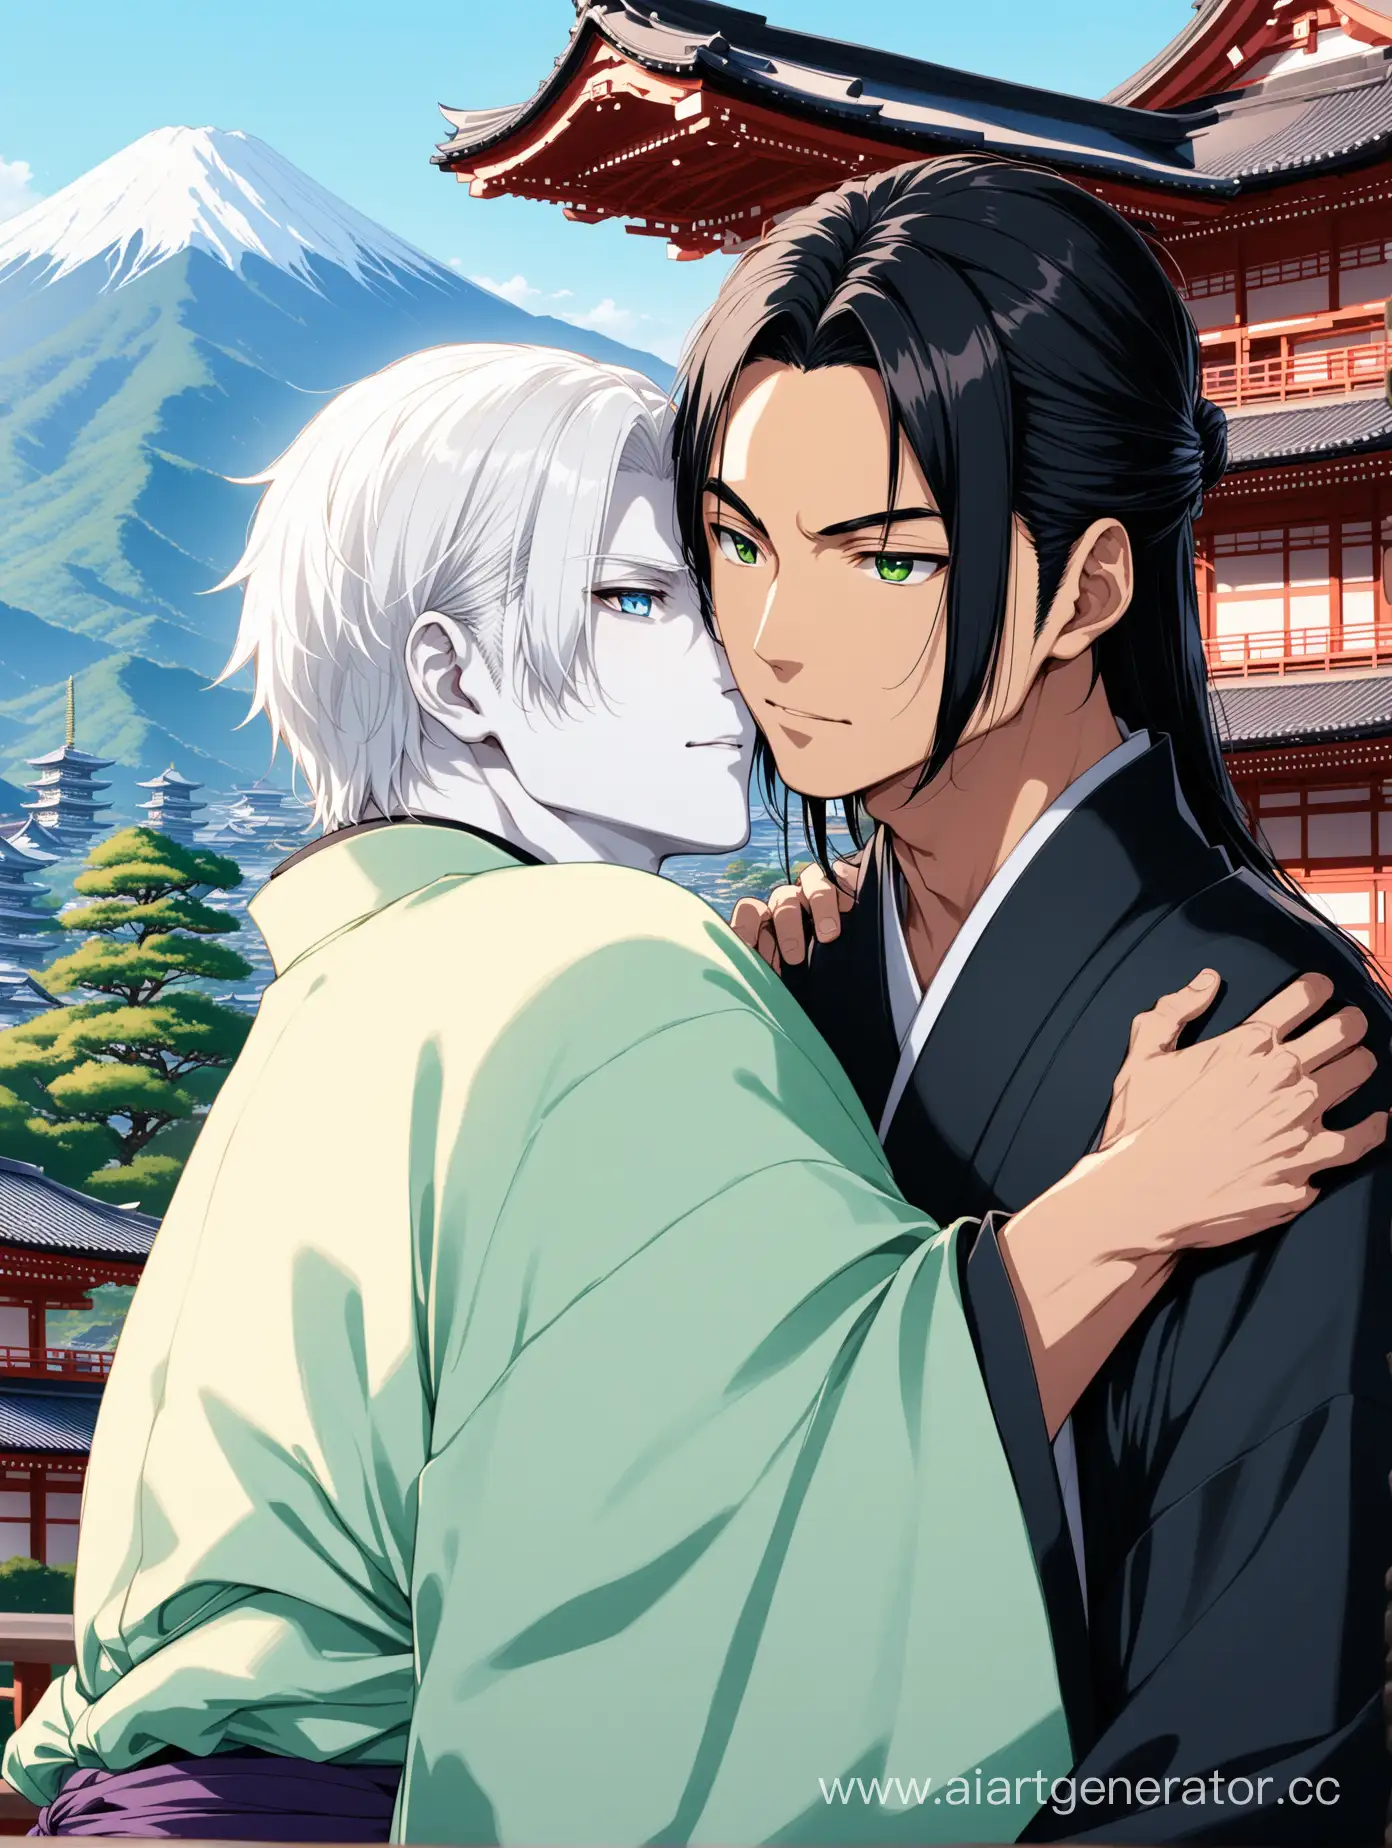 Изображение двух парней азиатов, обнимающихся на фоне японских храмов и гор. У первого парня короткие белые волосы и голубые глаза и высокий рост и белая кожа, у второго парня - длинные черные волосы и зеленые глаза. Оба парня одеты в традиционные японские кимоно